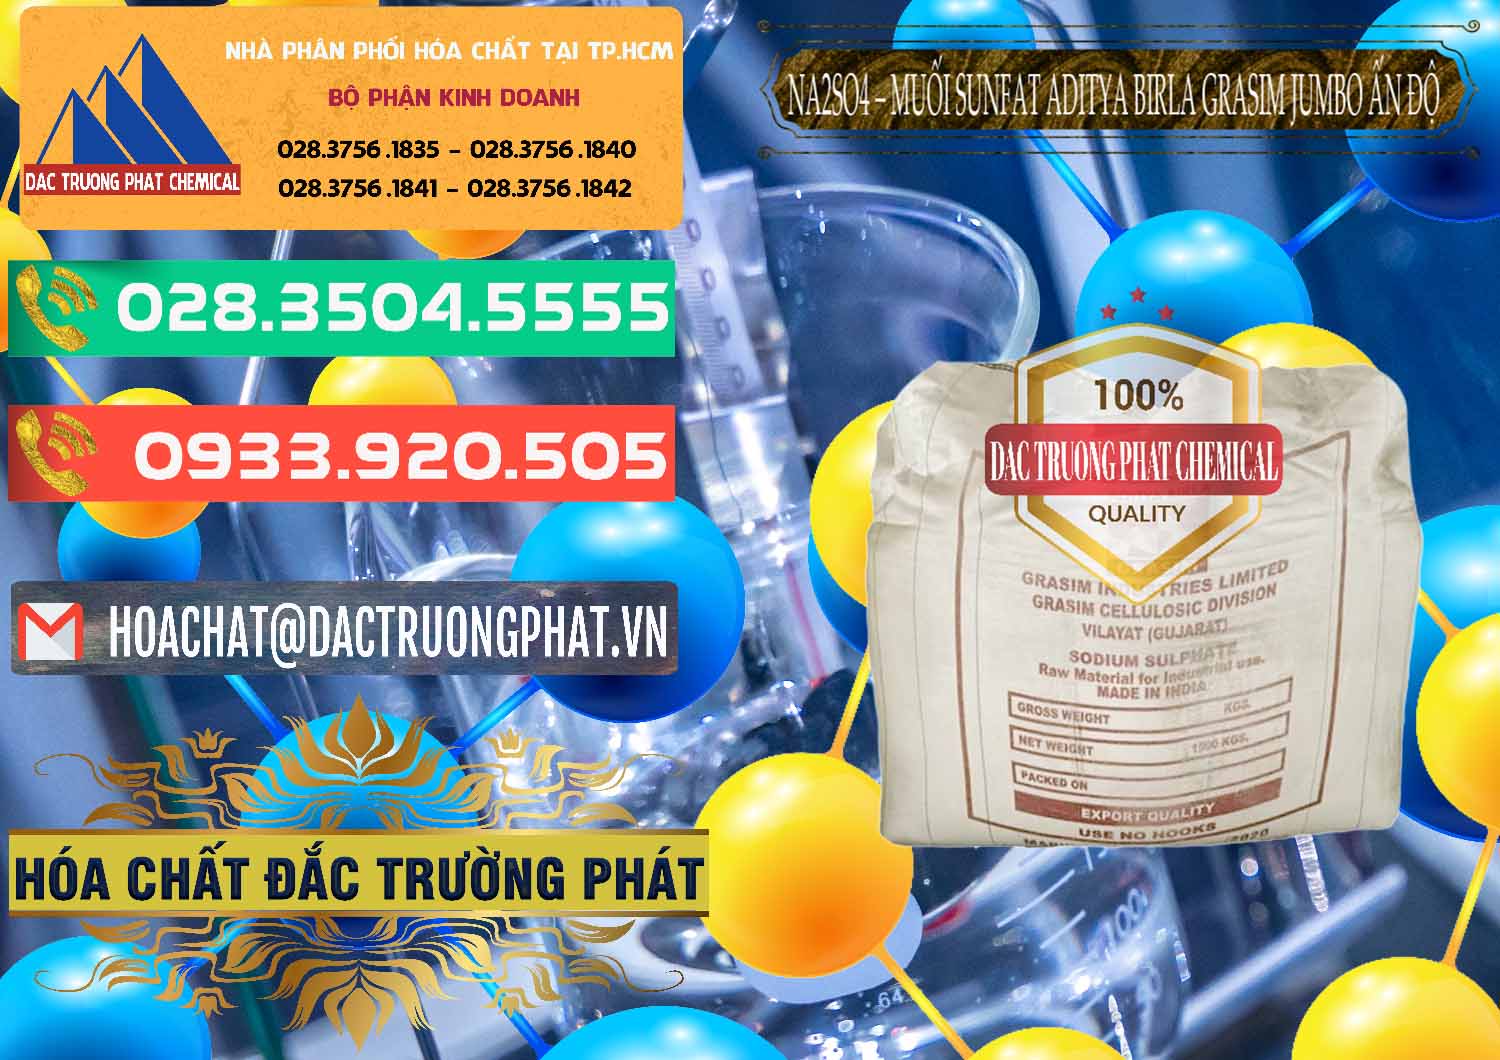 Công ty bán ( cung ứng ) Sodium Sulphate - Muối Sunfat Na2SO4 Jumbo Bành Aditya Birla Grasim Ấn Độ India - 0357 - Công ty chuyên cung ứng và phân phối hóa chất tại TP.HCM - congtyhoachat.com.vn